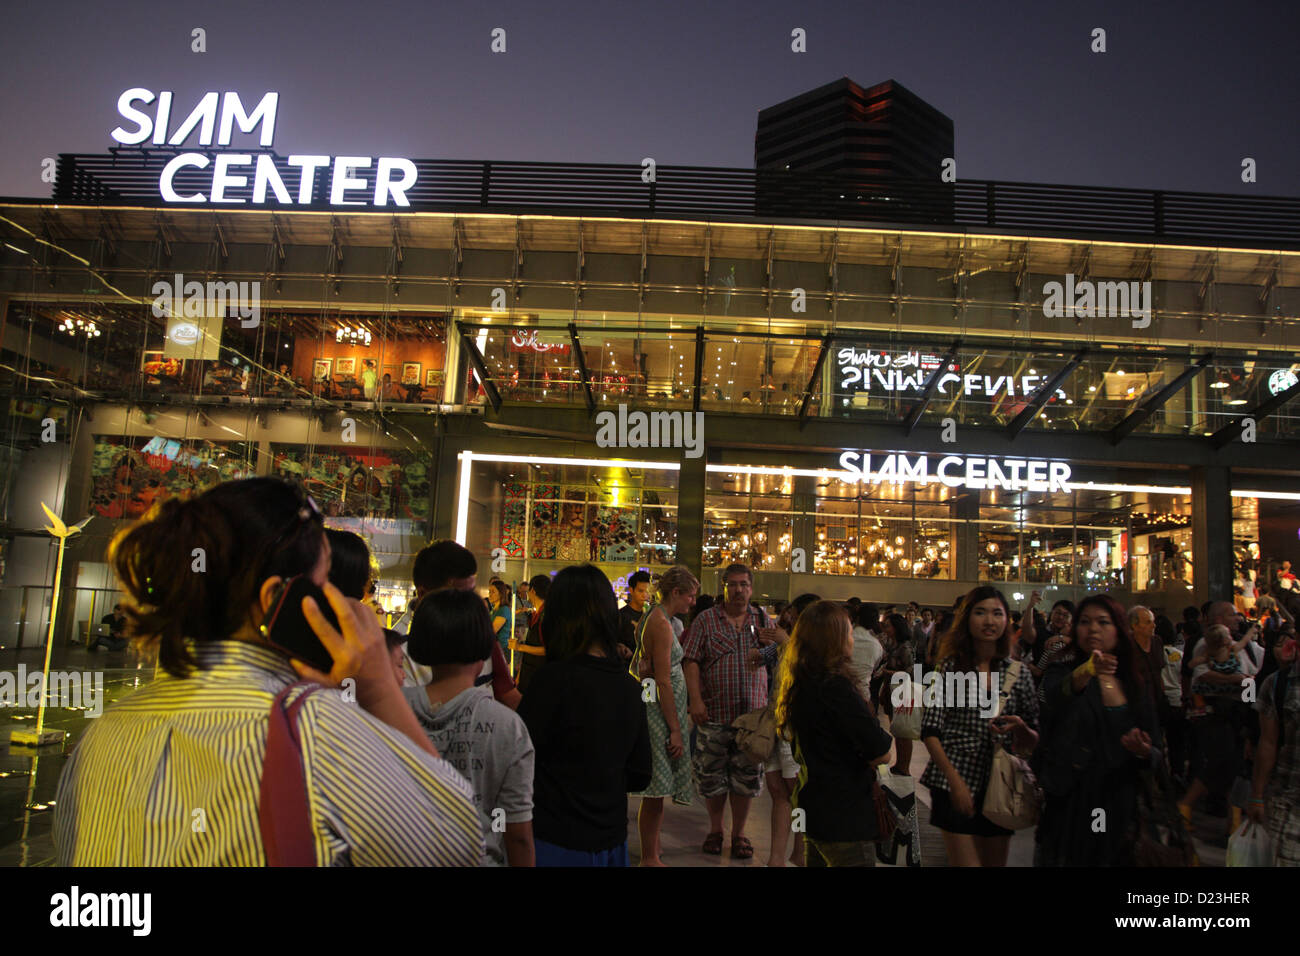 El Siam Center shopping mall nueva remodelación , el primer centro comercial de Tailandia, construido hace 40 años, completa remodelación en 11 Jan 2013 Foto de stock